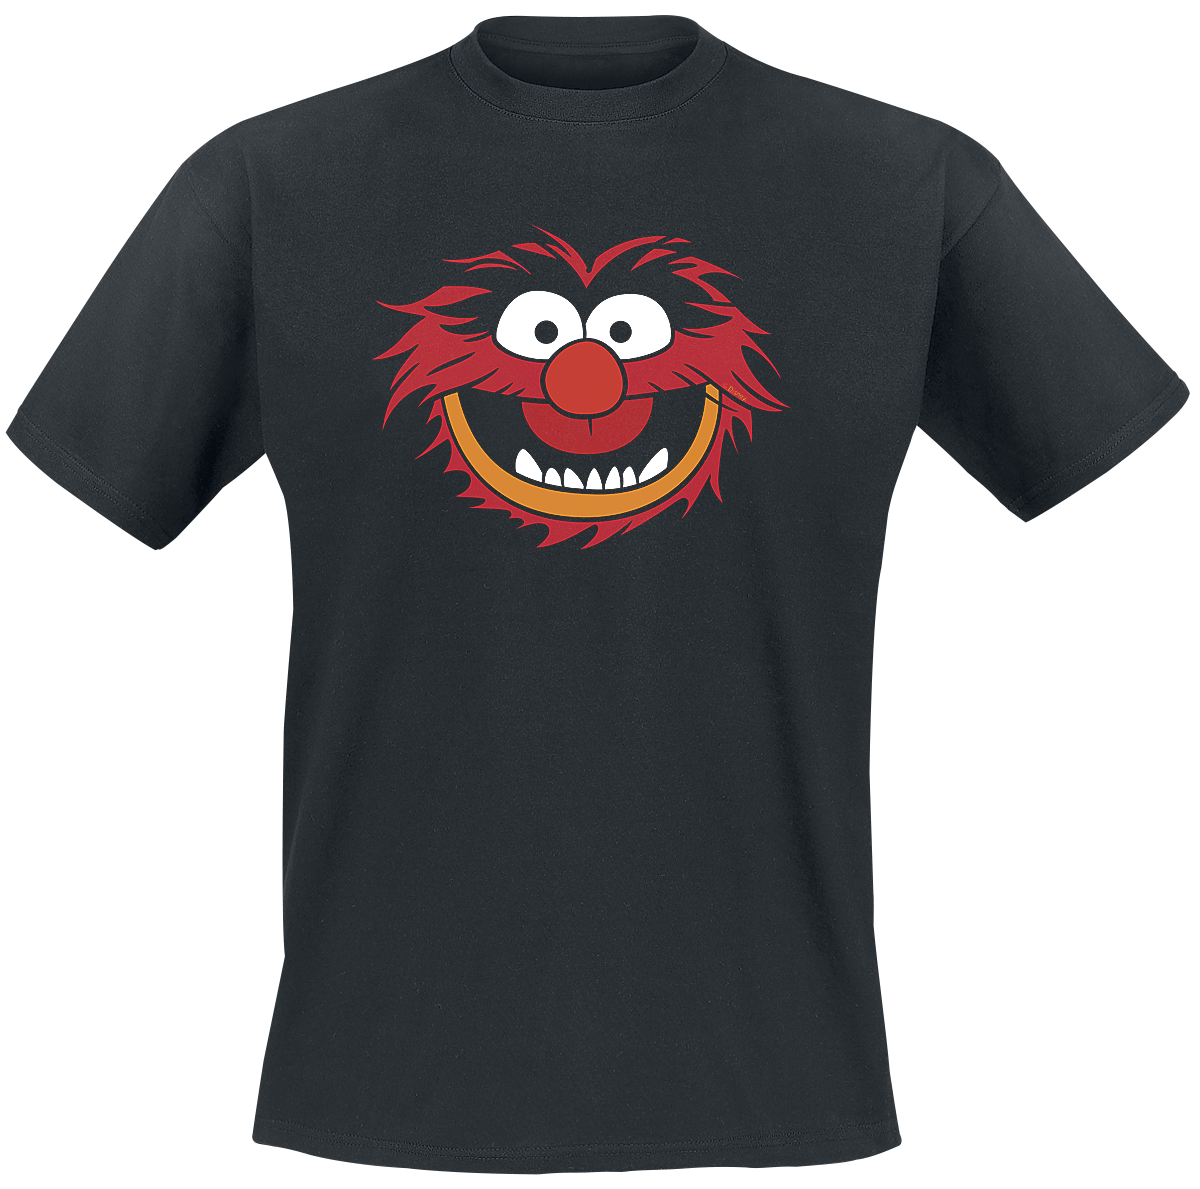 Die Muppets - Animal - Gesicht - T-Shirt - schwarz